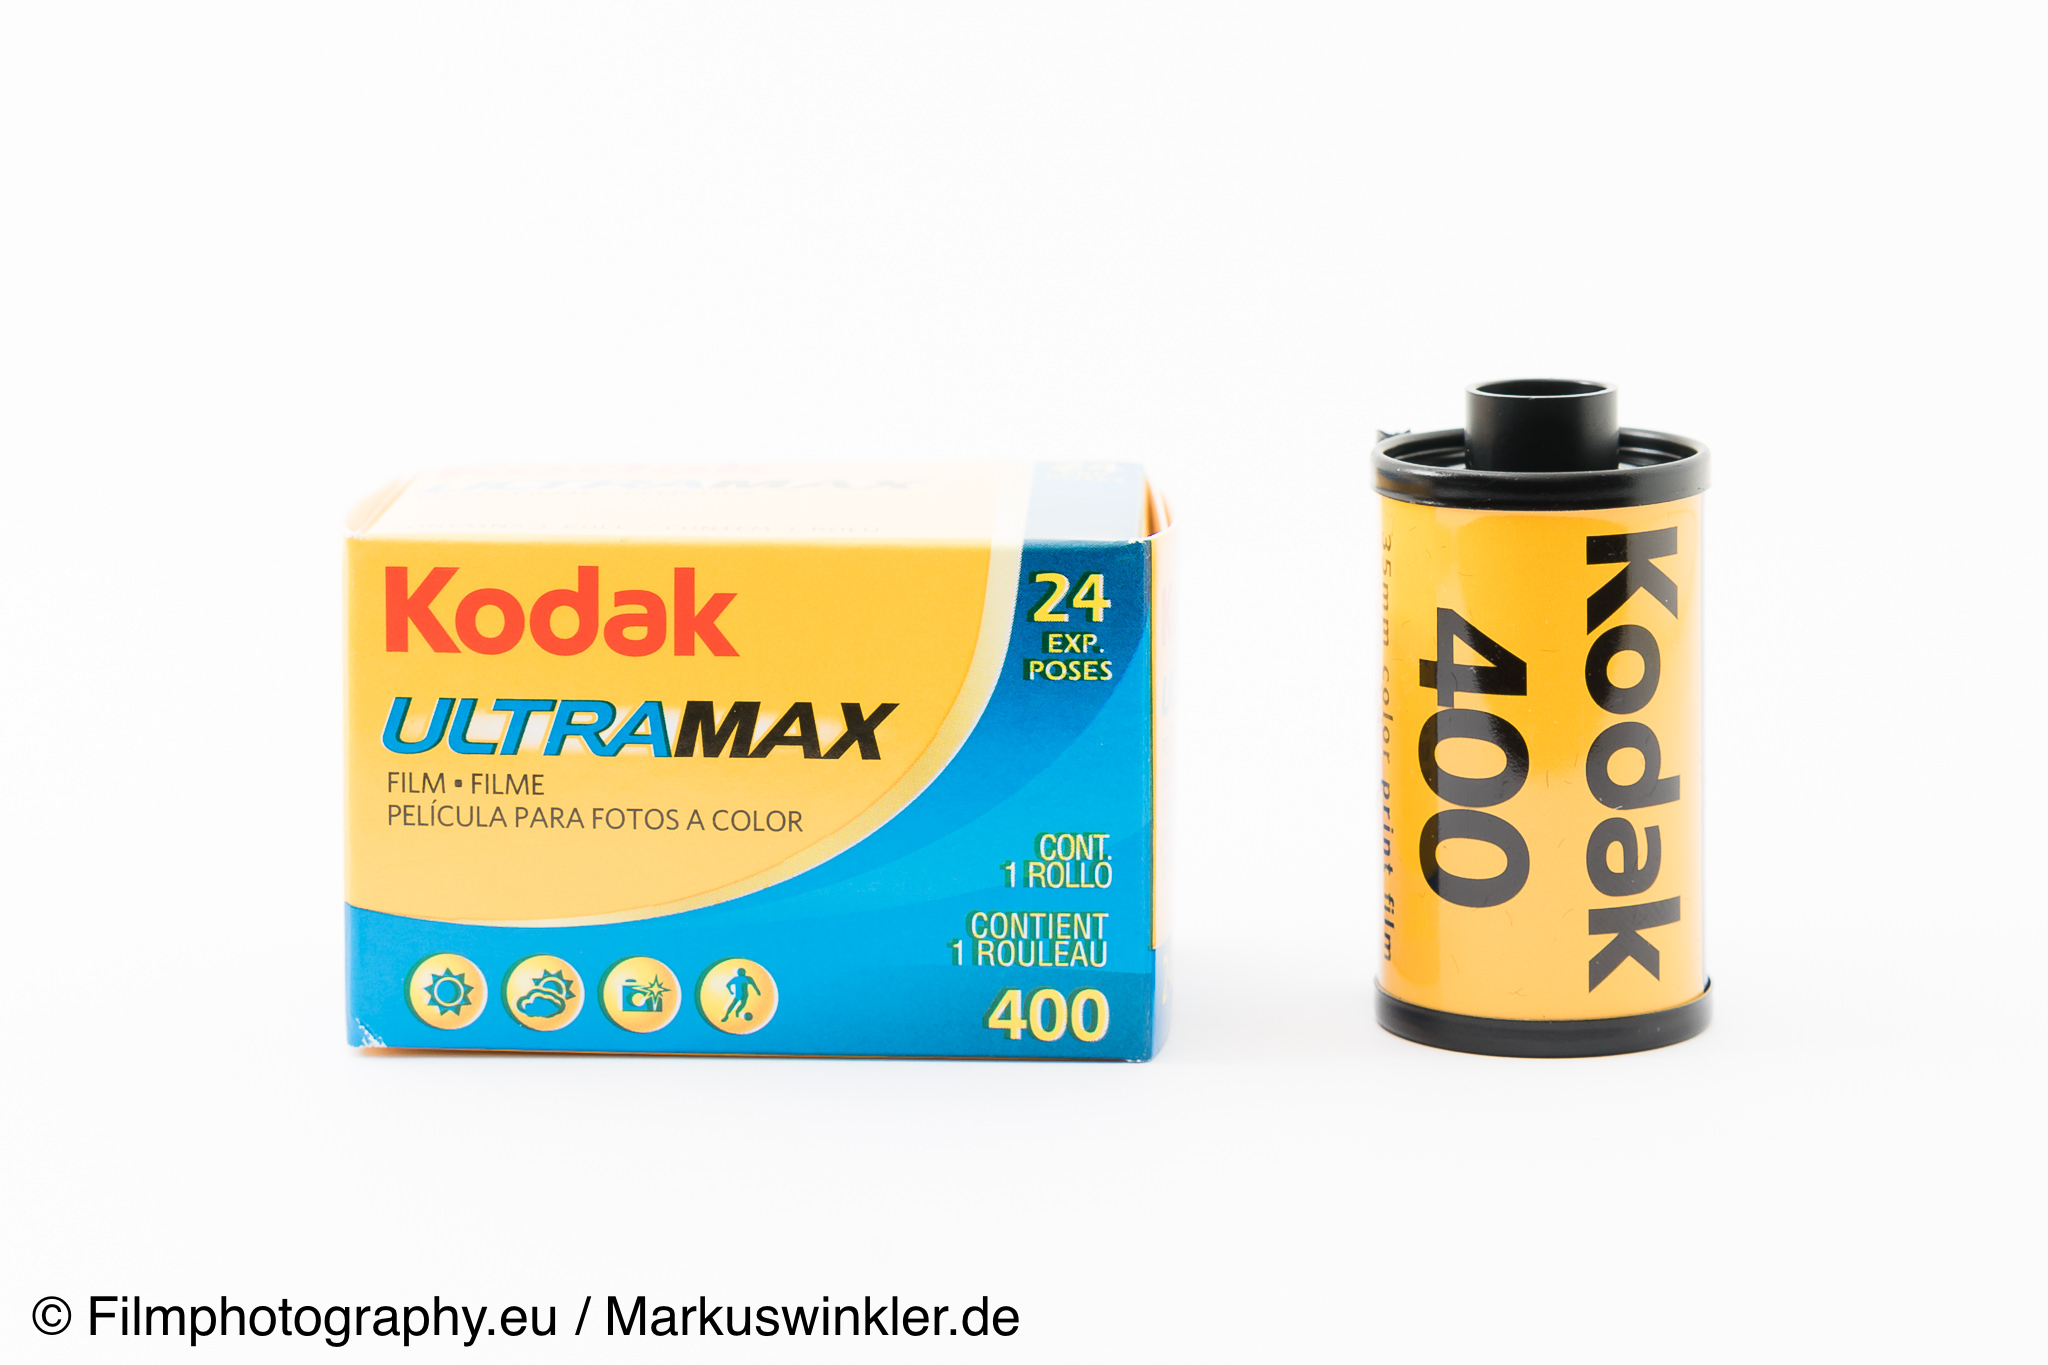 Kodak ultramax 400  Digital film, Film photography, 35mm film